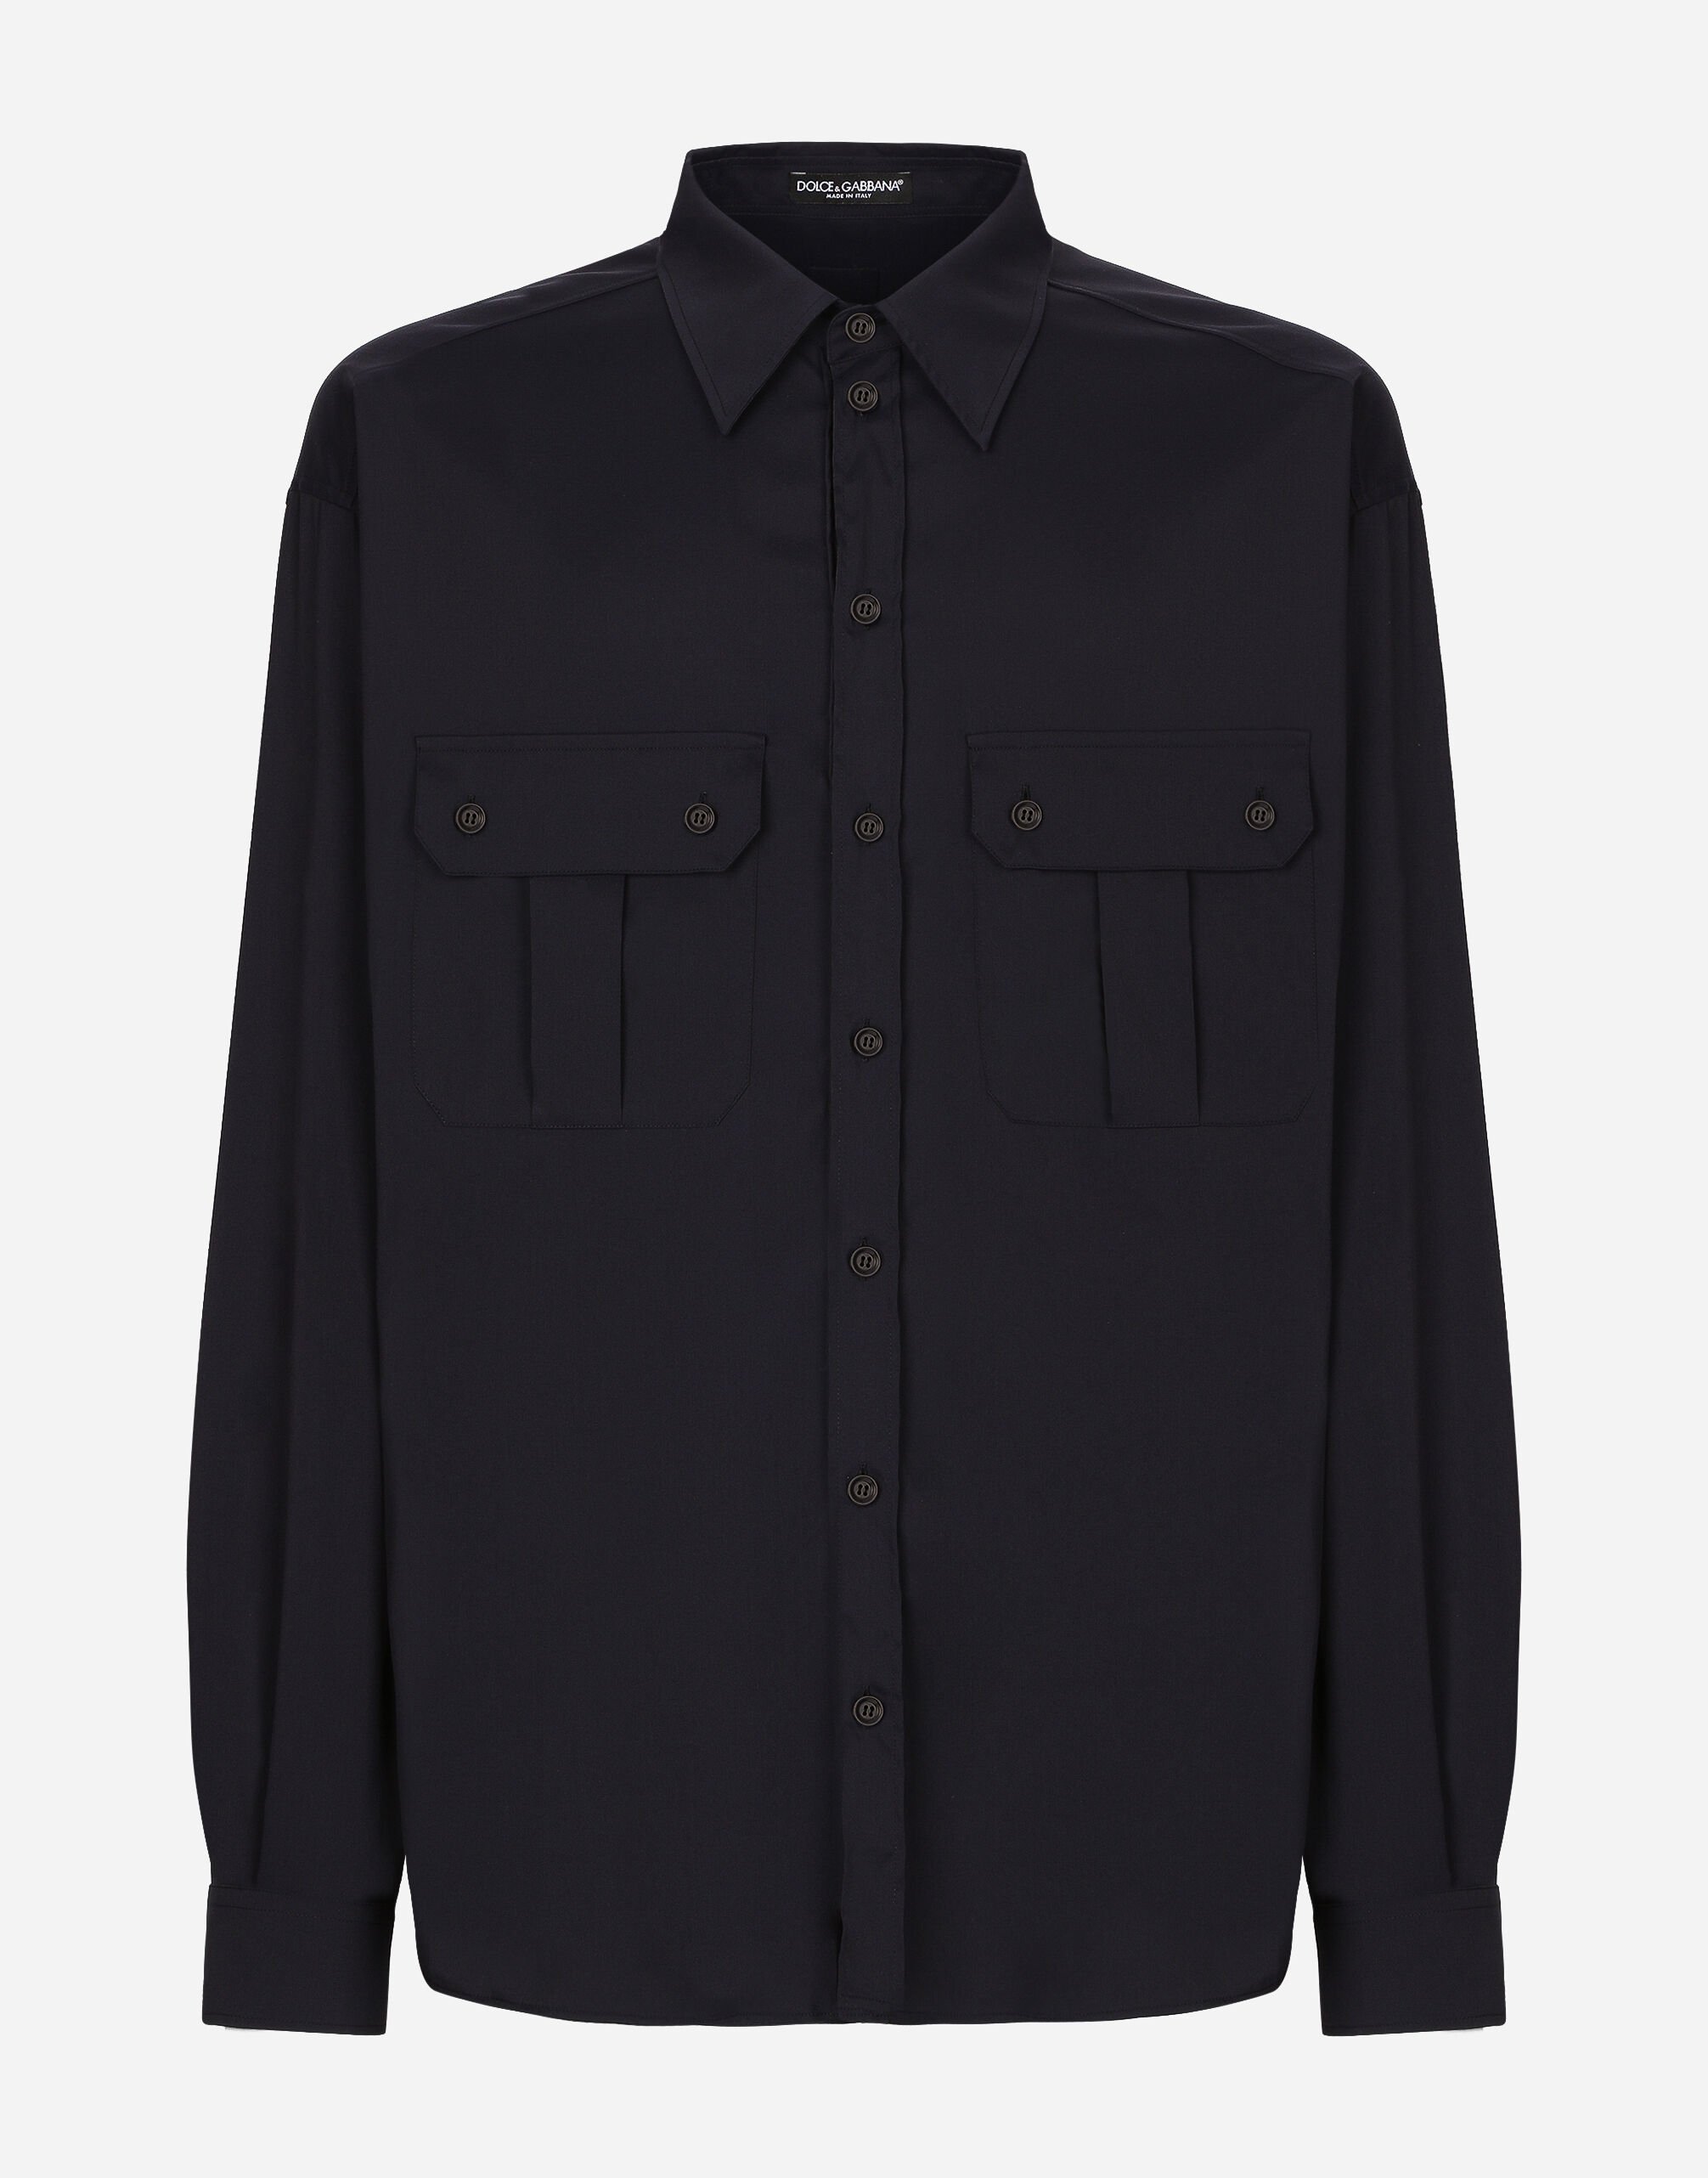 Dolce & Gabbana Technical fabric shirt with pockets Print G5JM8TFS4HS